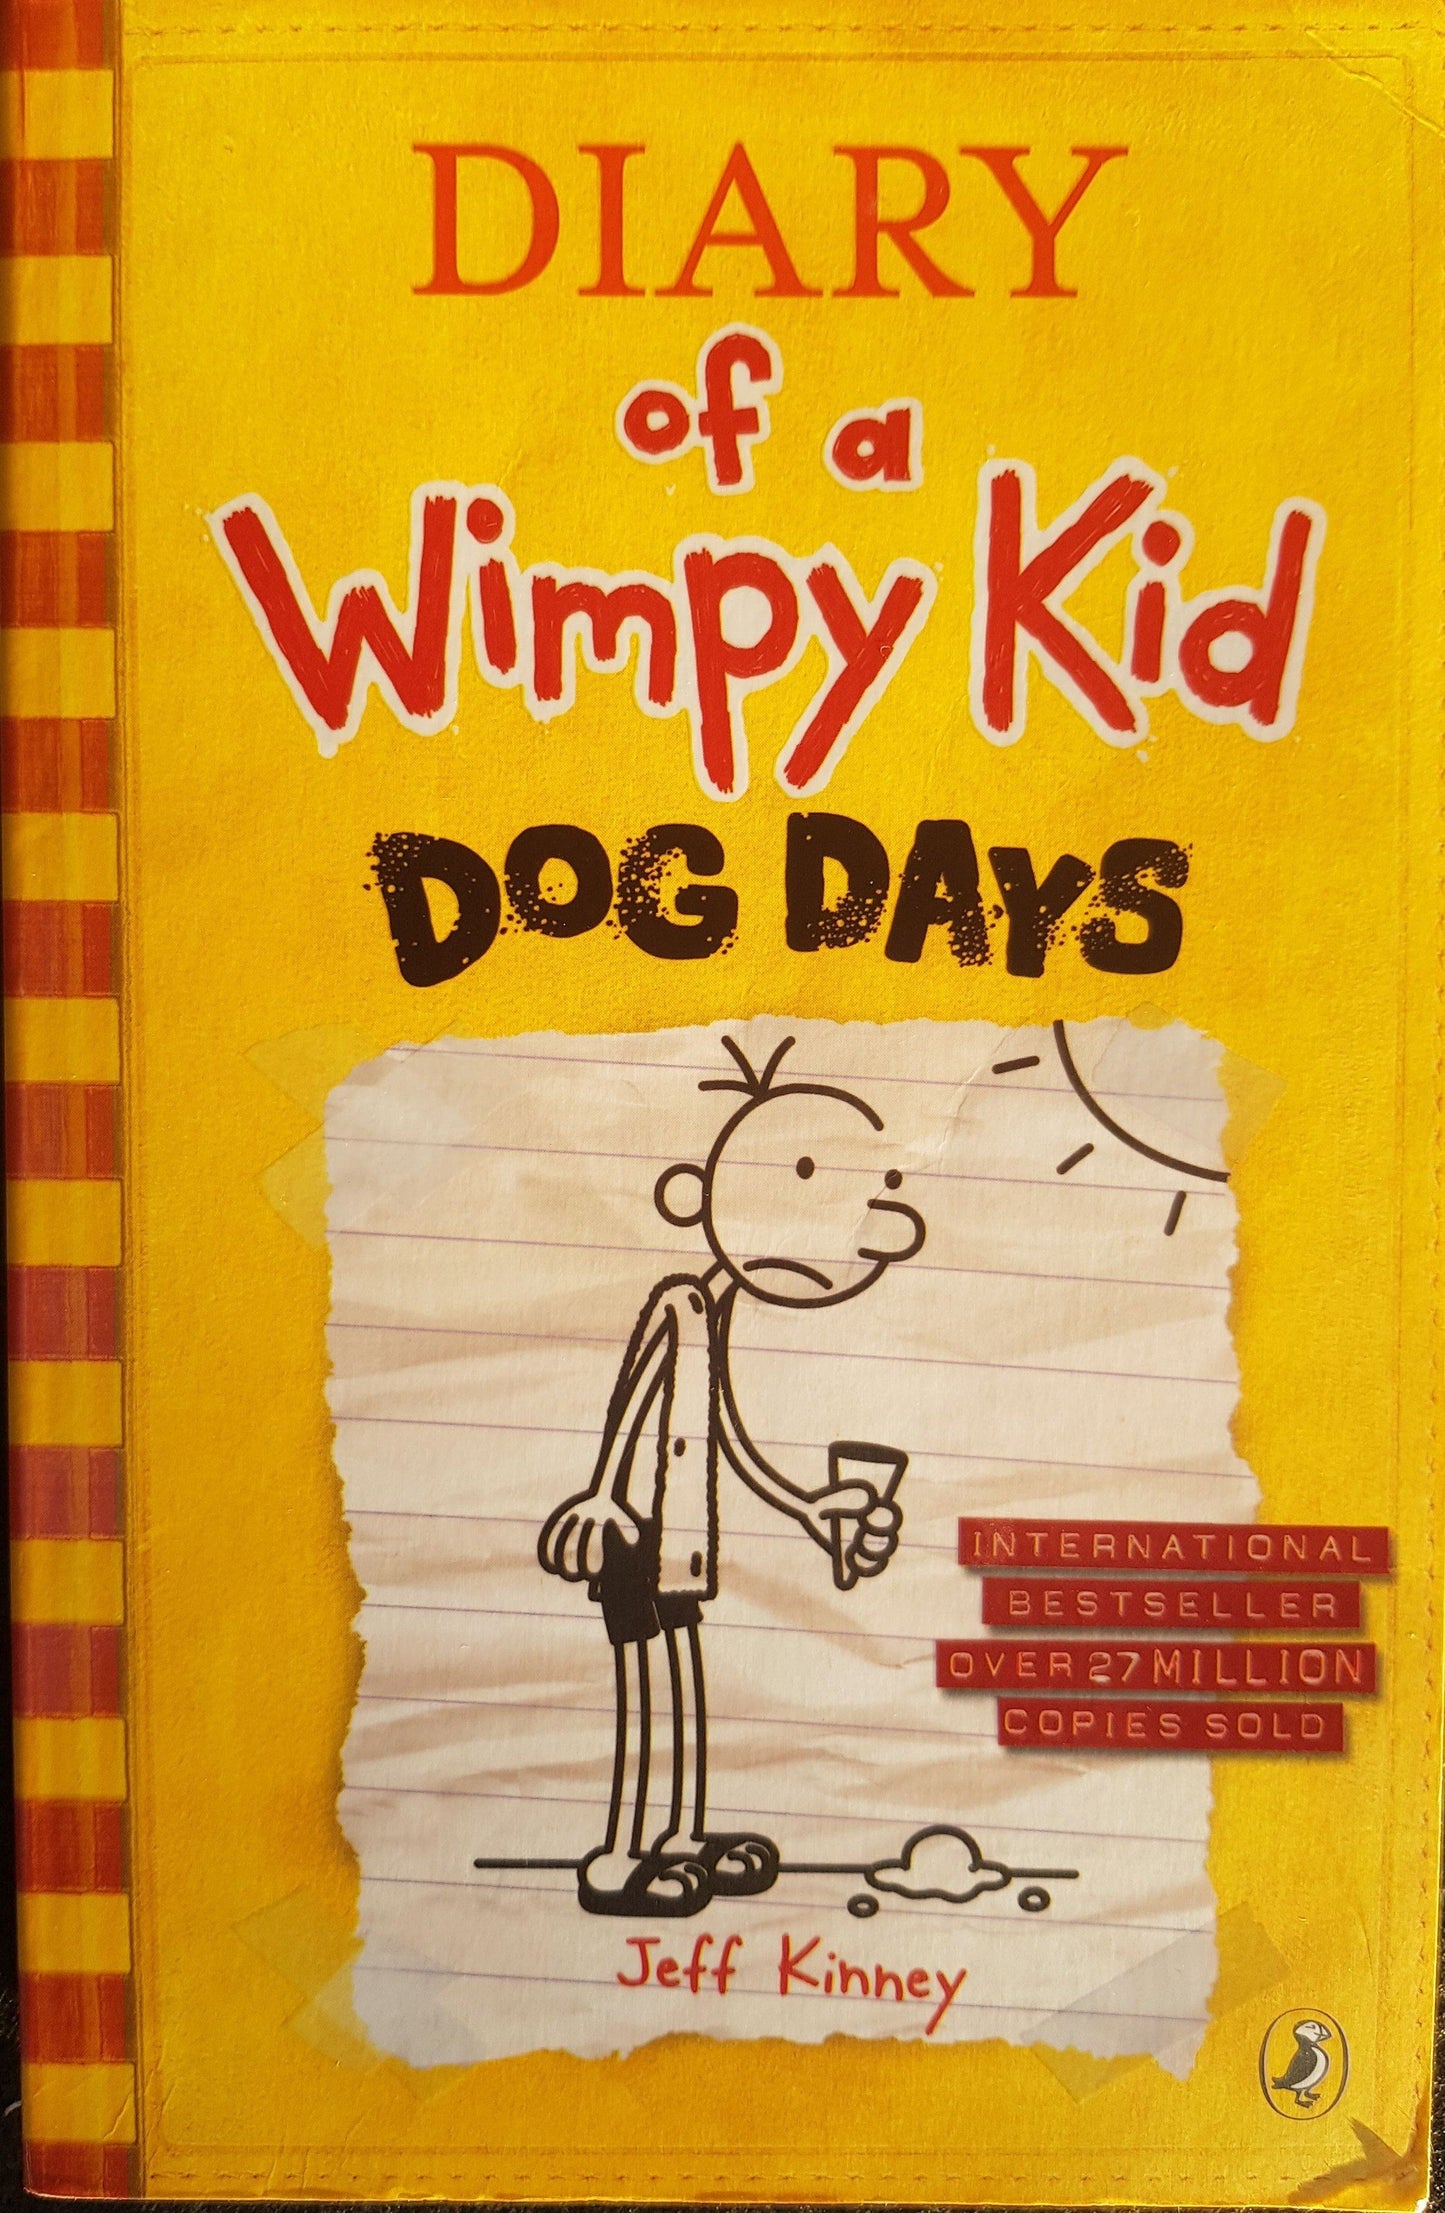 Dog Days Like New Wimpy Kid  (4616187183159)